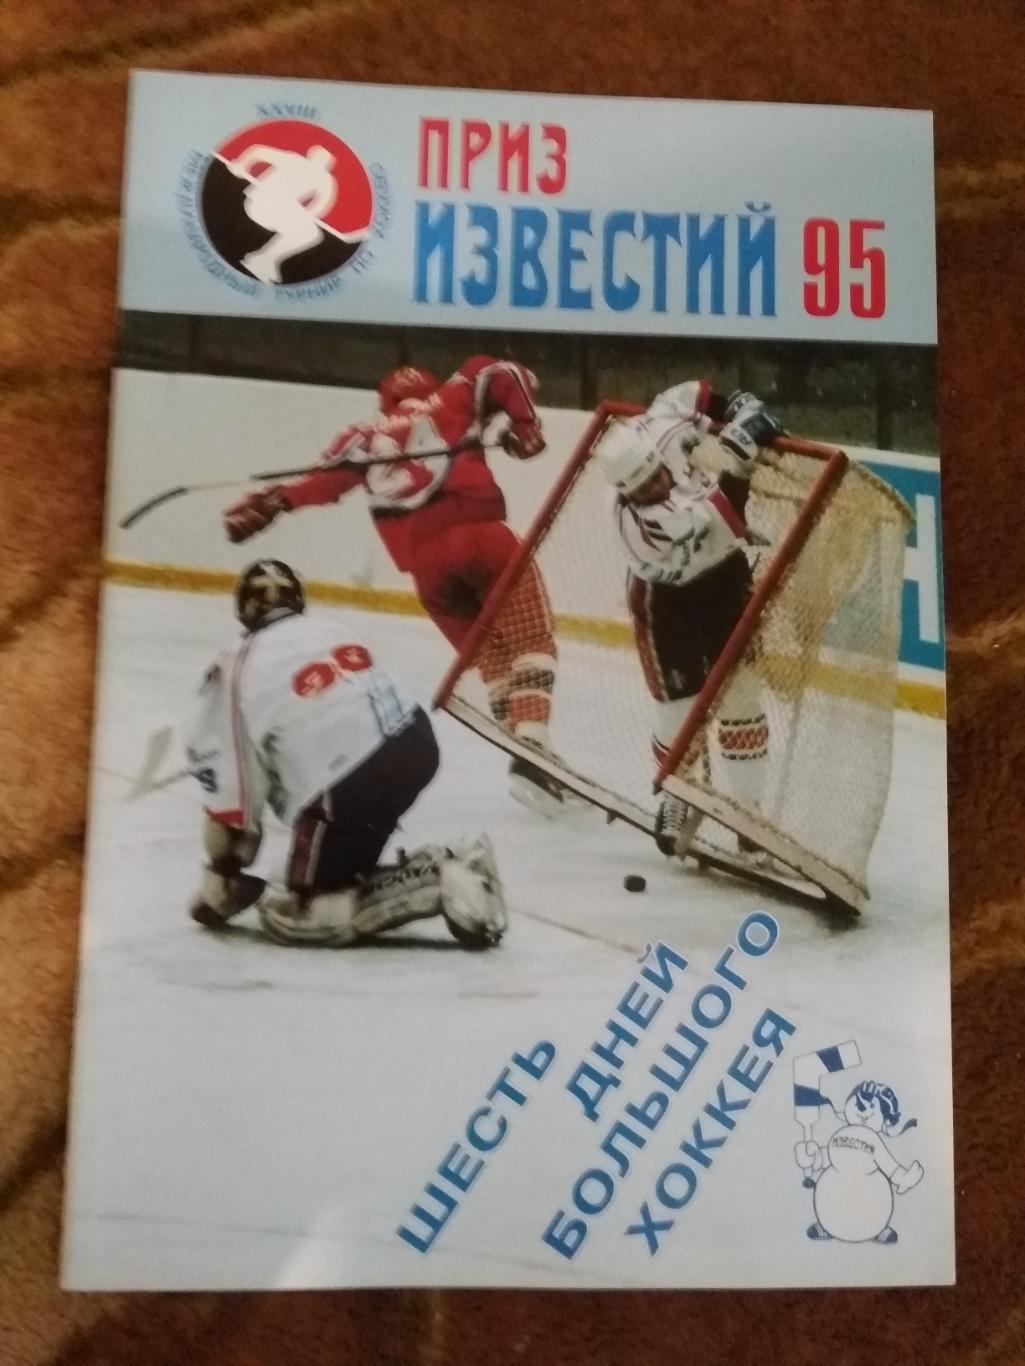 Приз Известий 1995 г. (официальная).